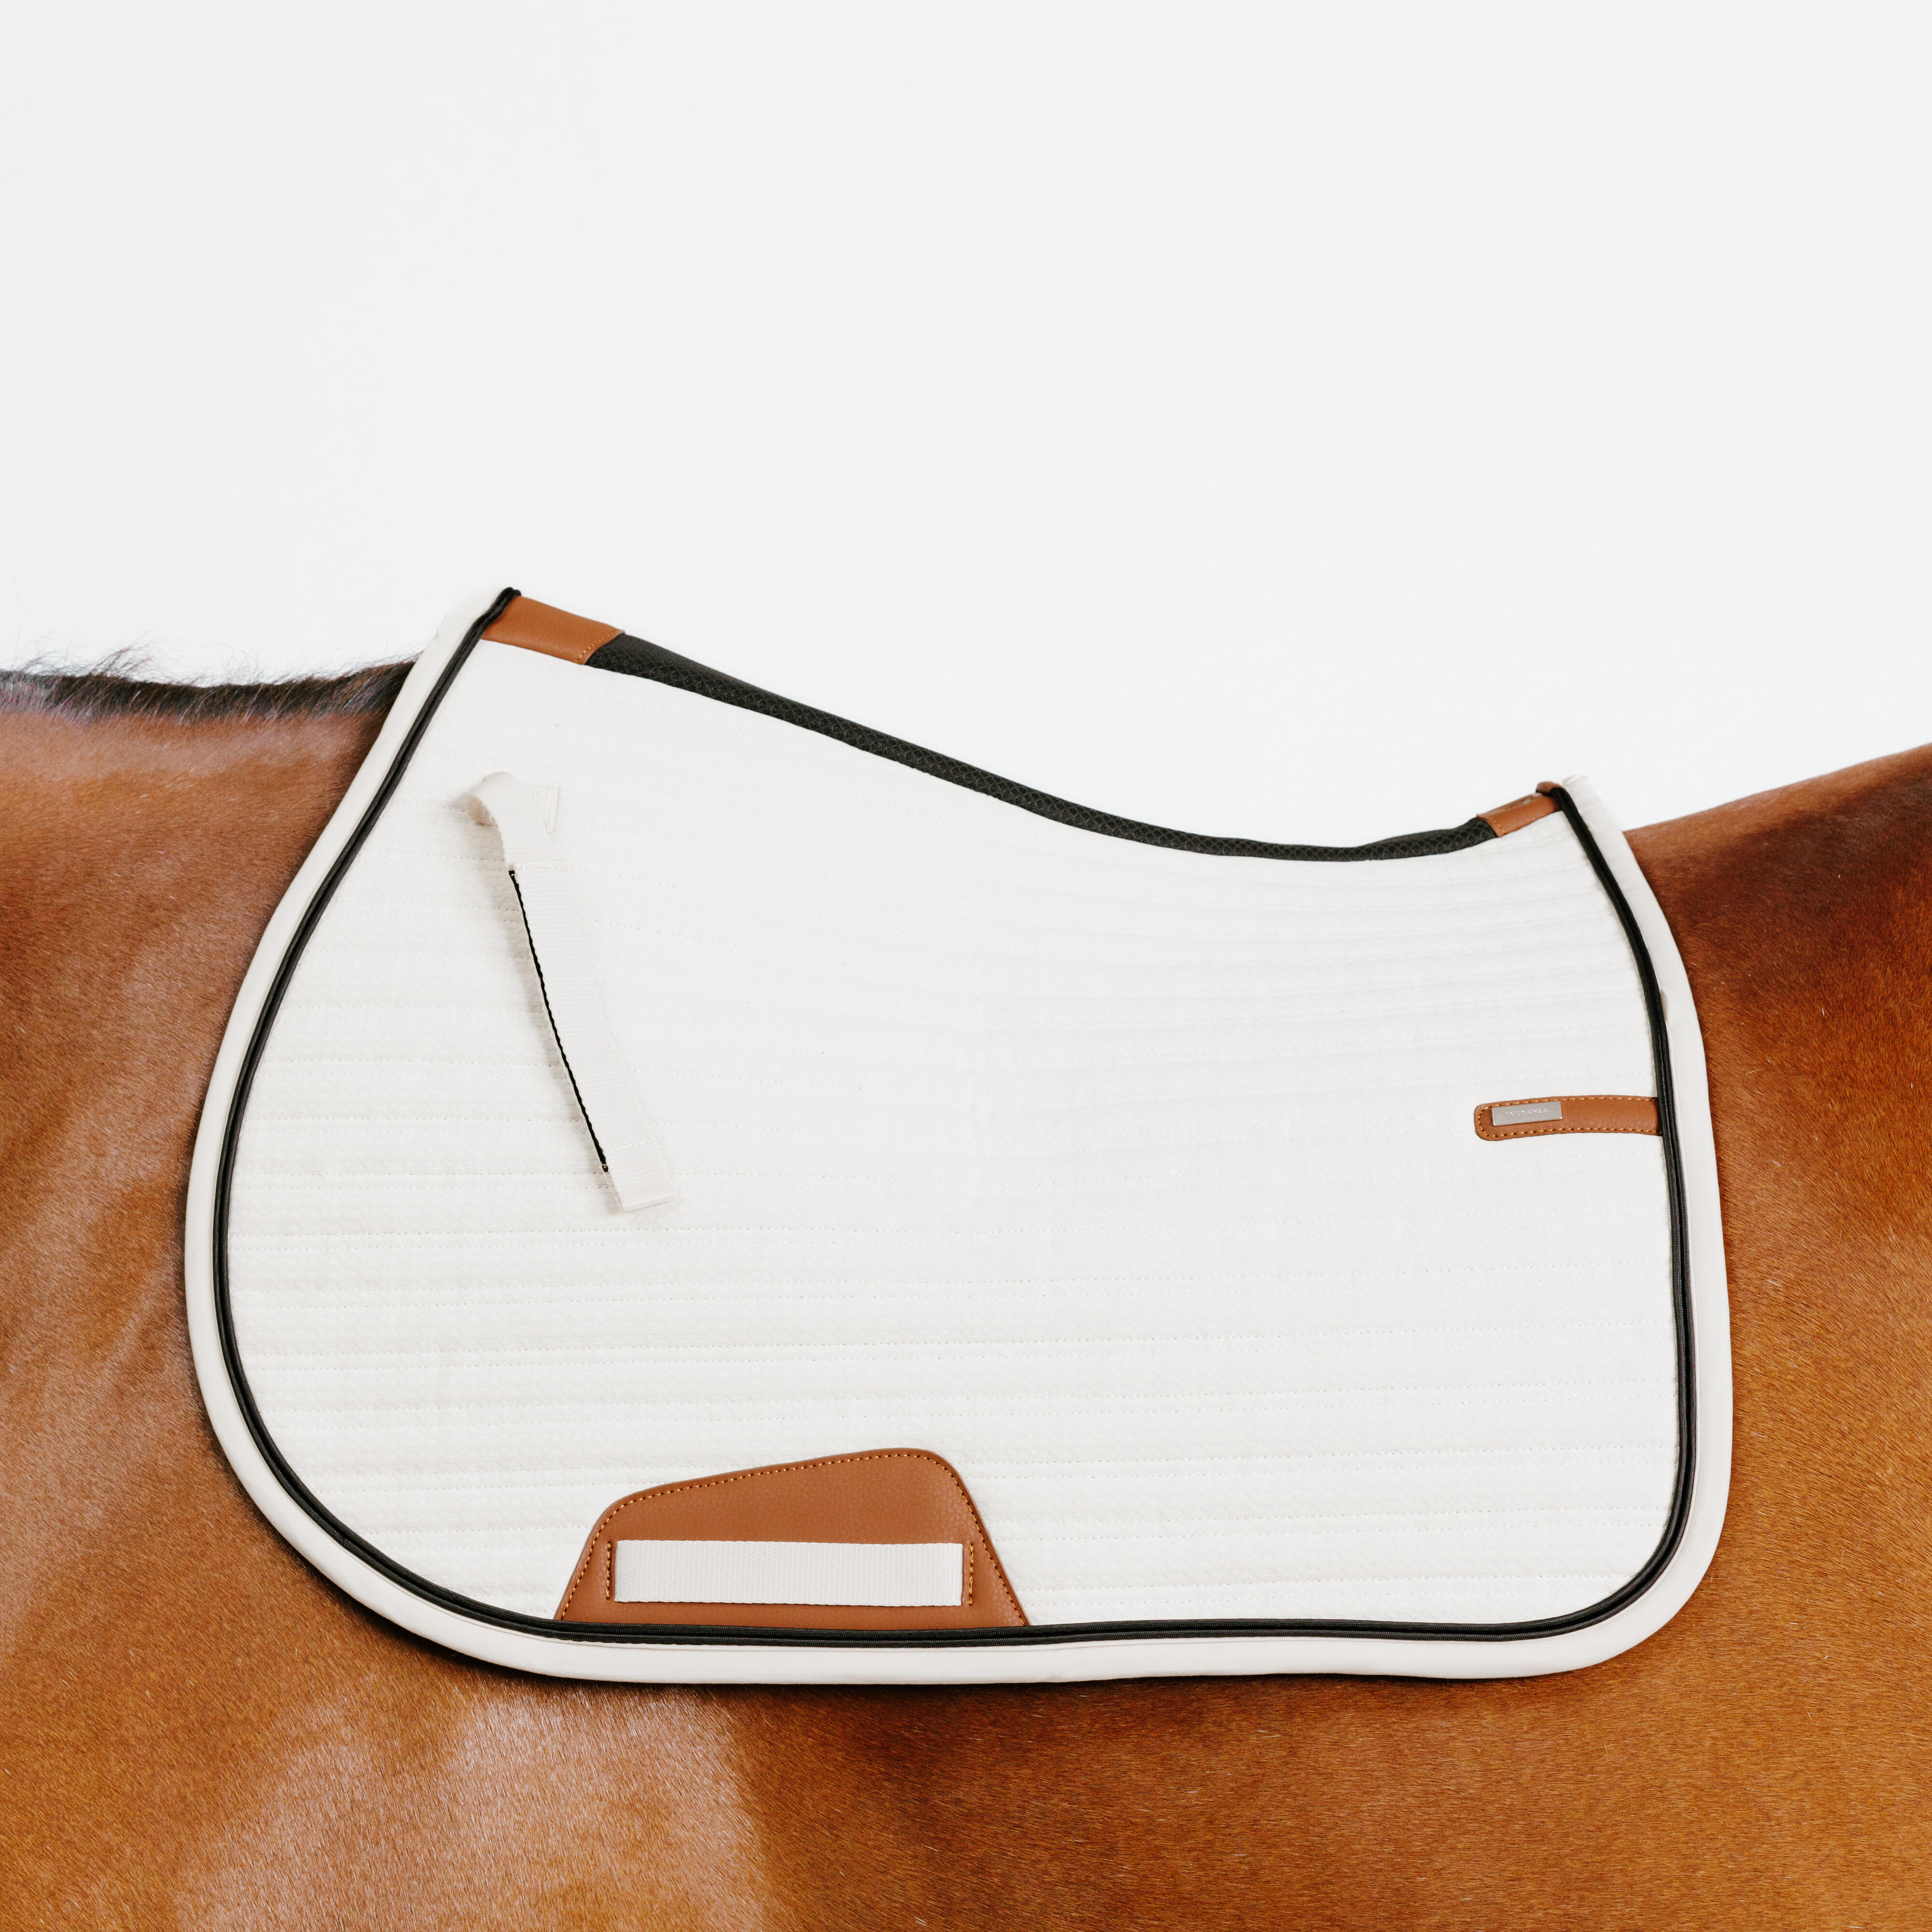 Schabracke Pferd/Pony - 900 Pimp beige